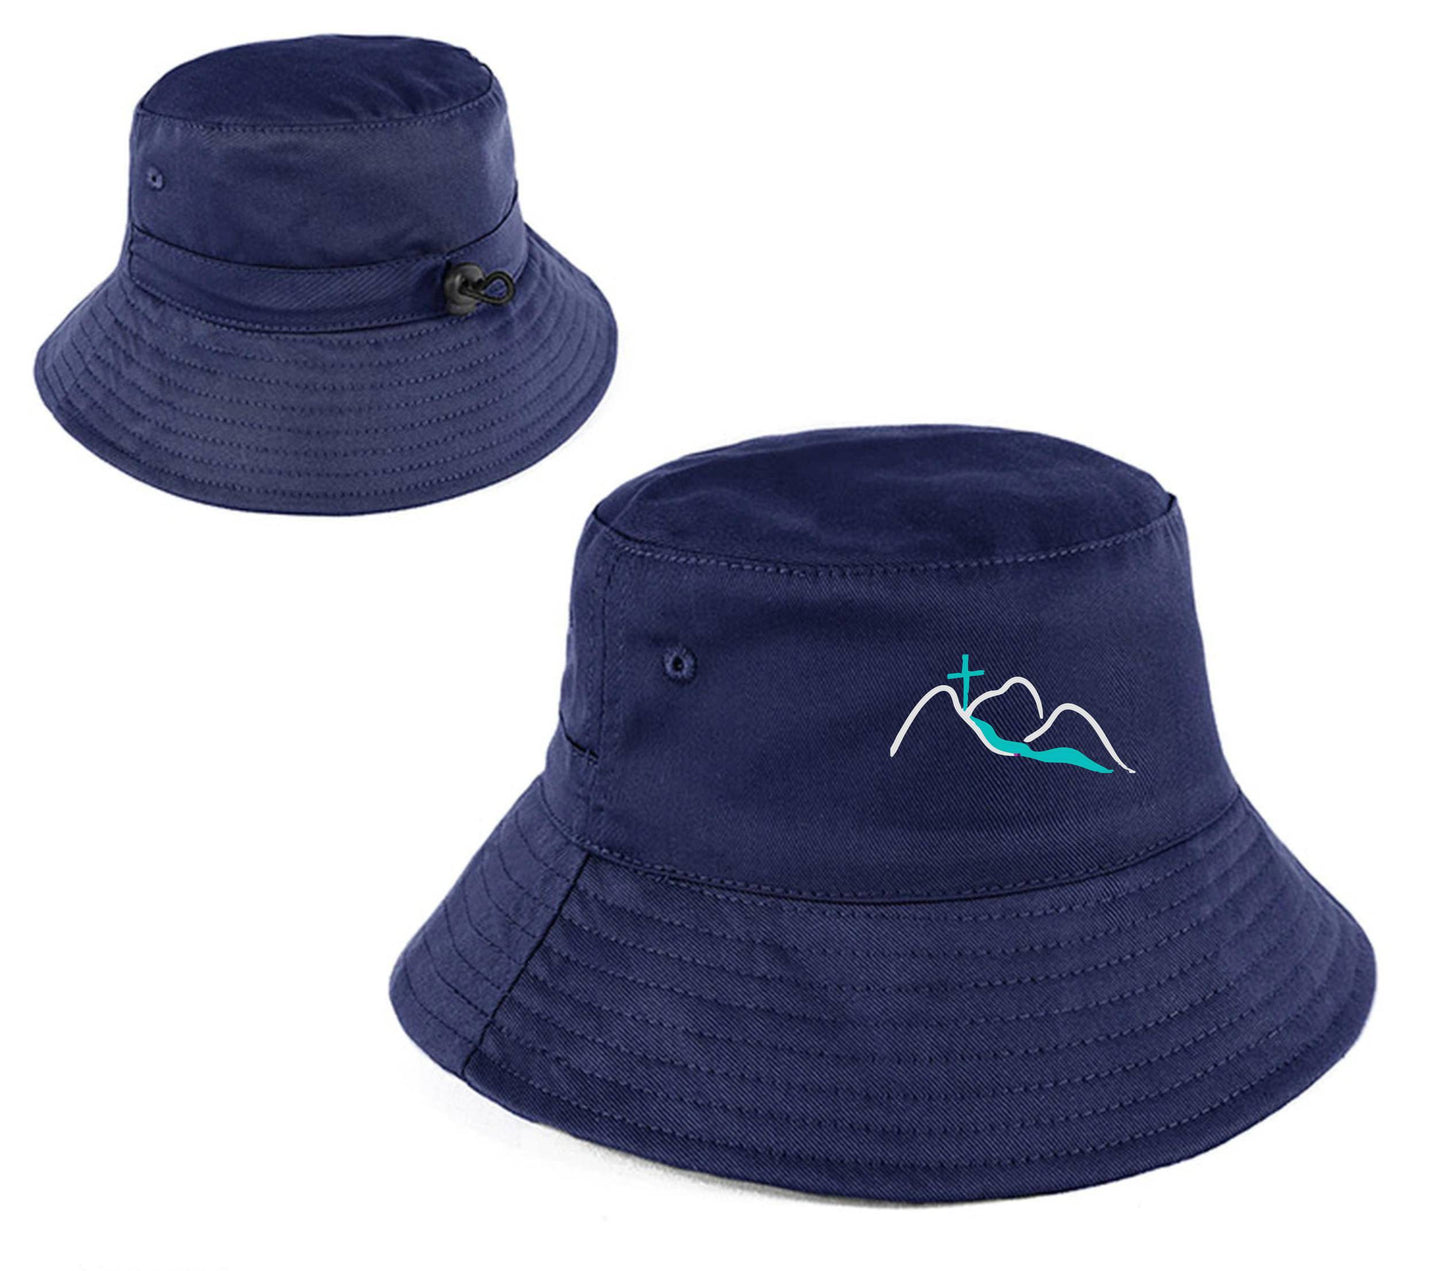 Tcc Bucket Hat